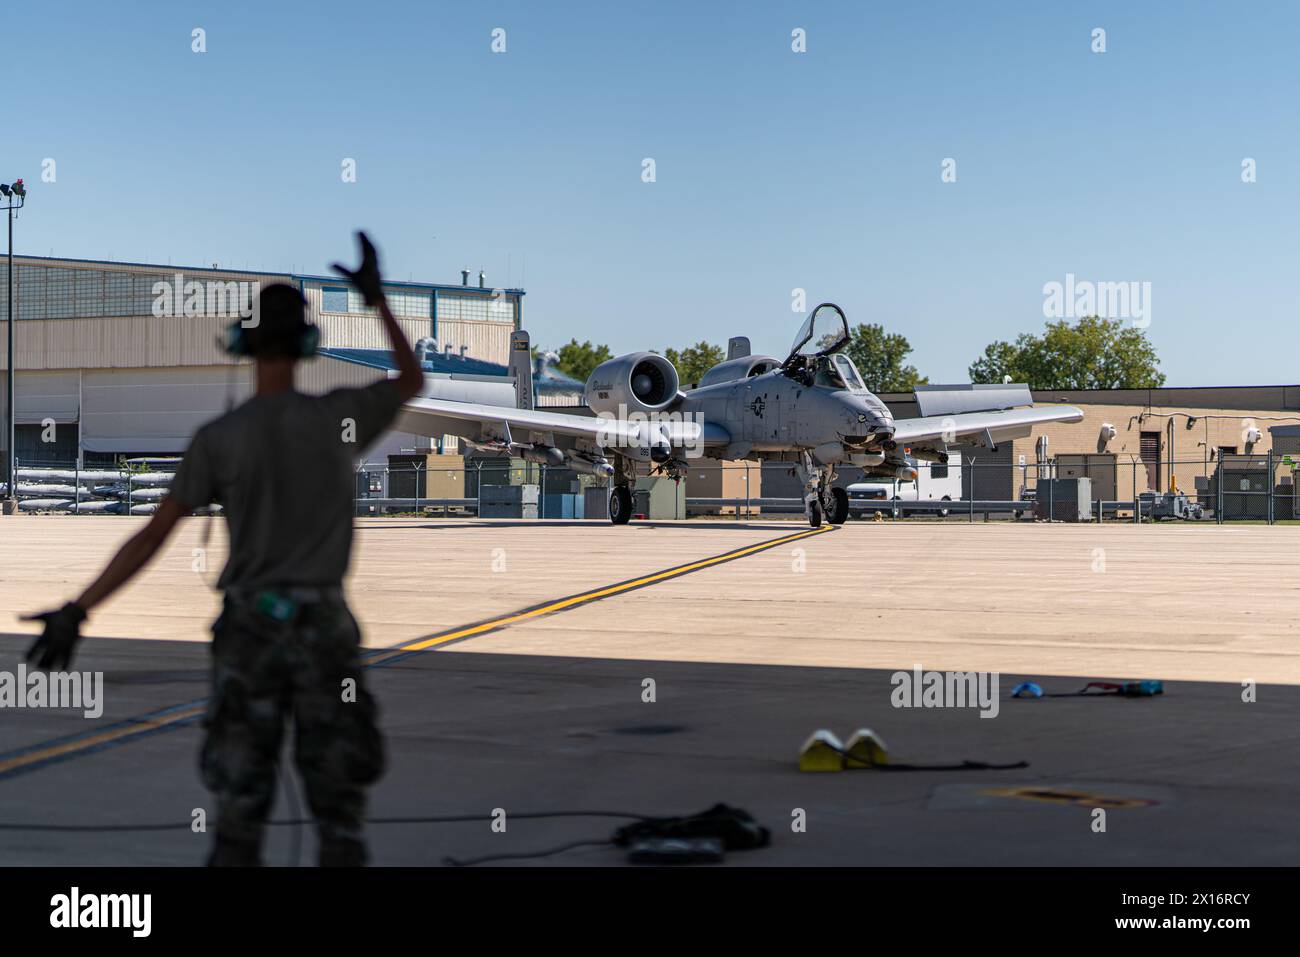 Un uomo è in piedi sulla pista, salutando un jet da caccia. La scena è tesa ed eccitante, mentre il jet da combattimento si sta preparando per il decollo Foto Stock